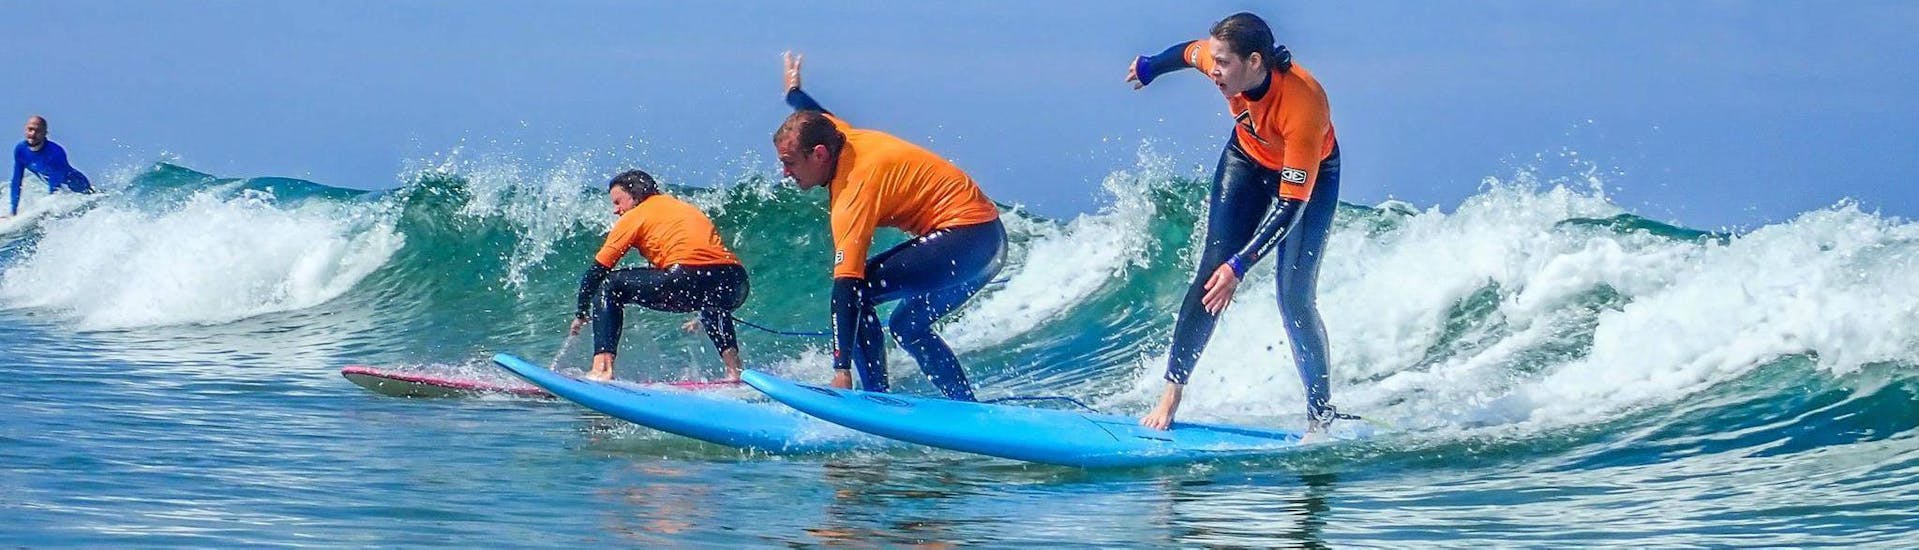 Surfkurs für Kinder & Erwachsene für Anfänger & Fortgeschrittene.